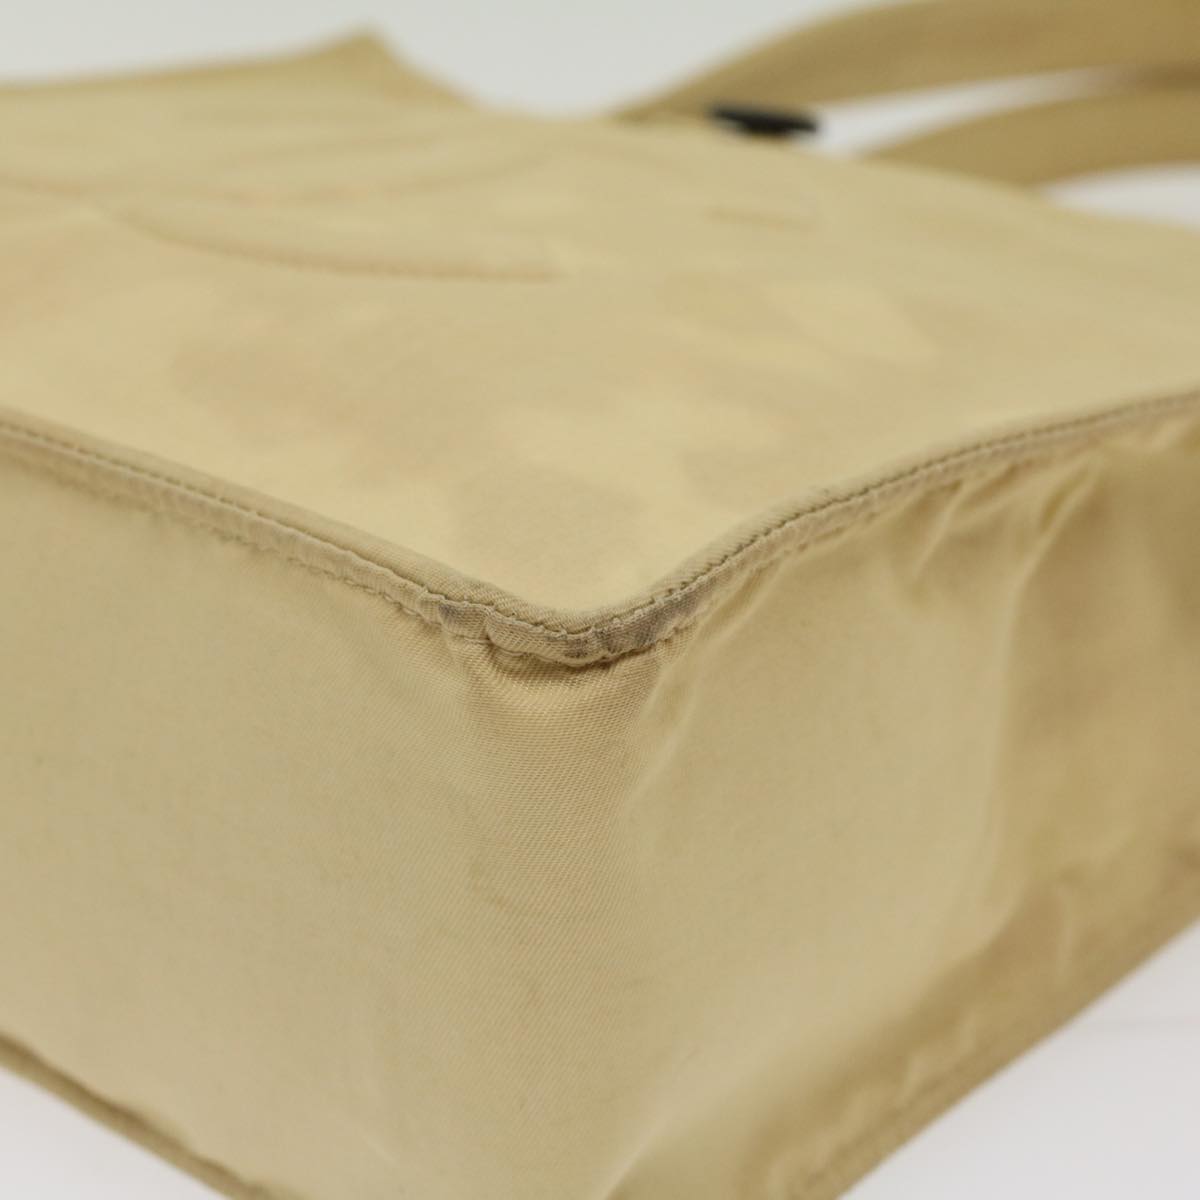 CHANEL Shoulder Bag Nylon Beige CC Auth bs7114